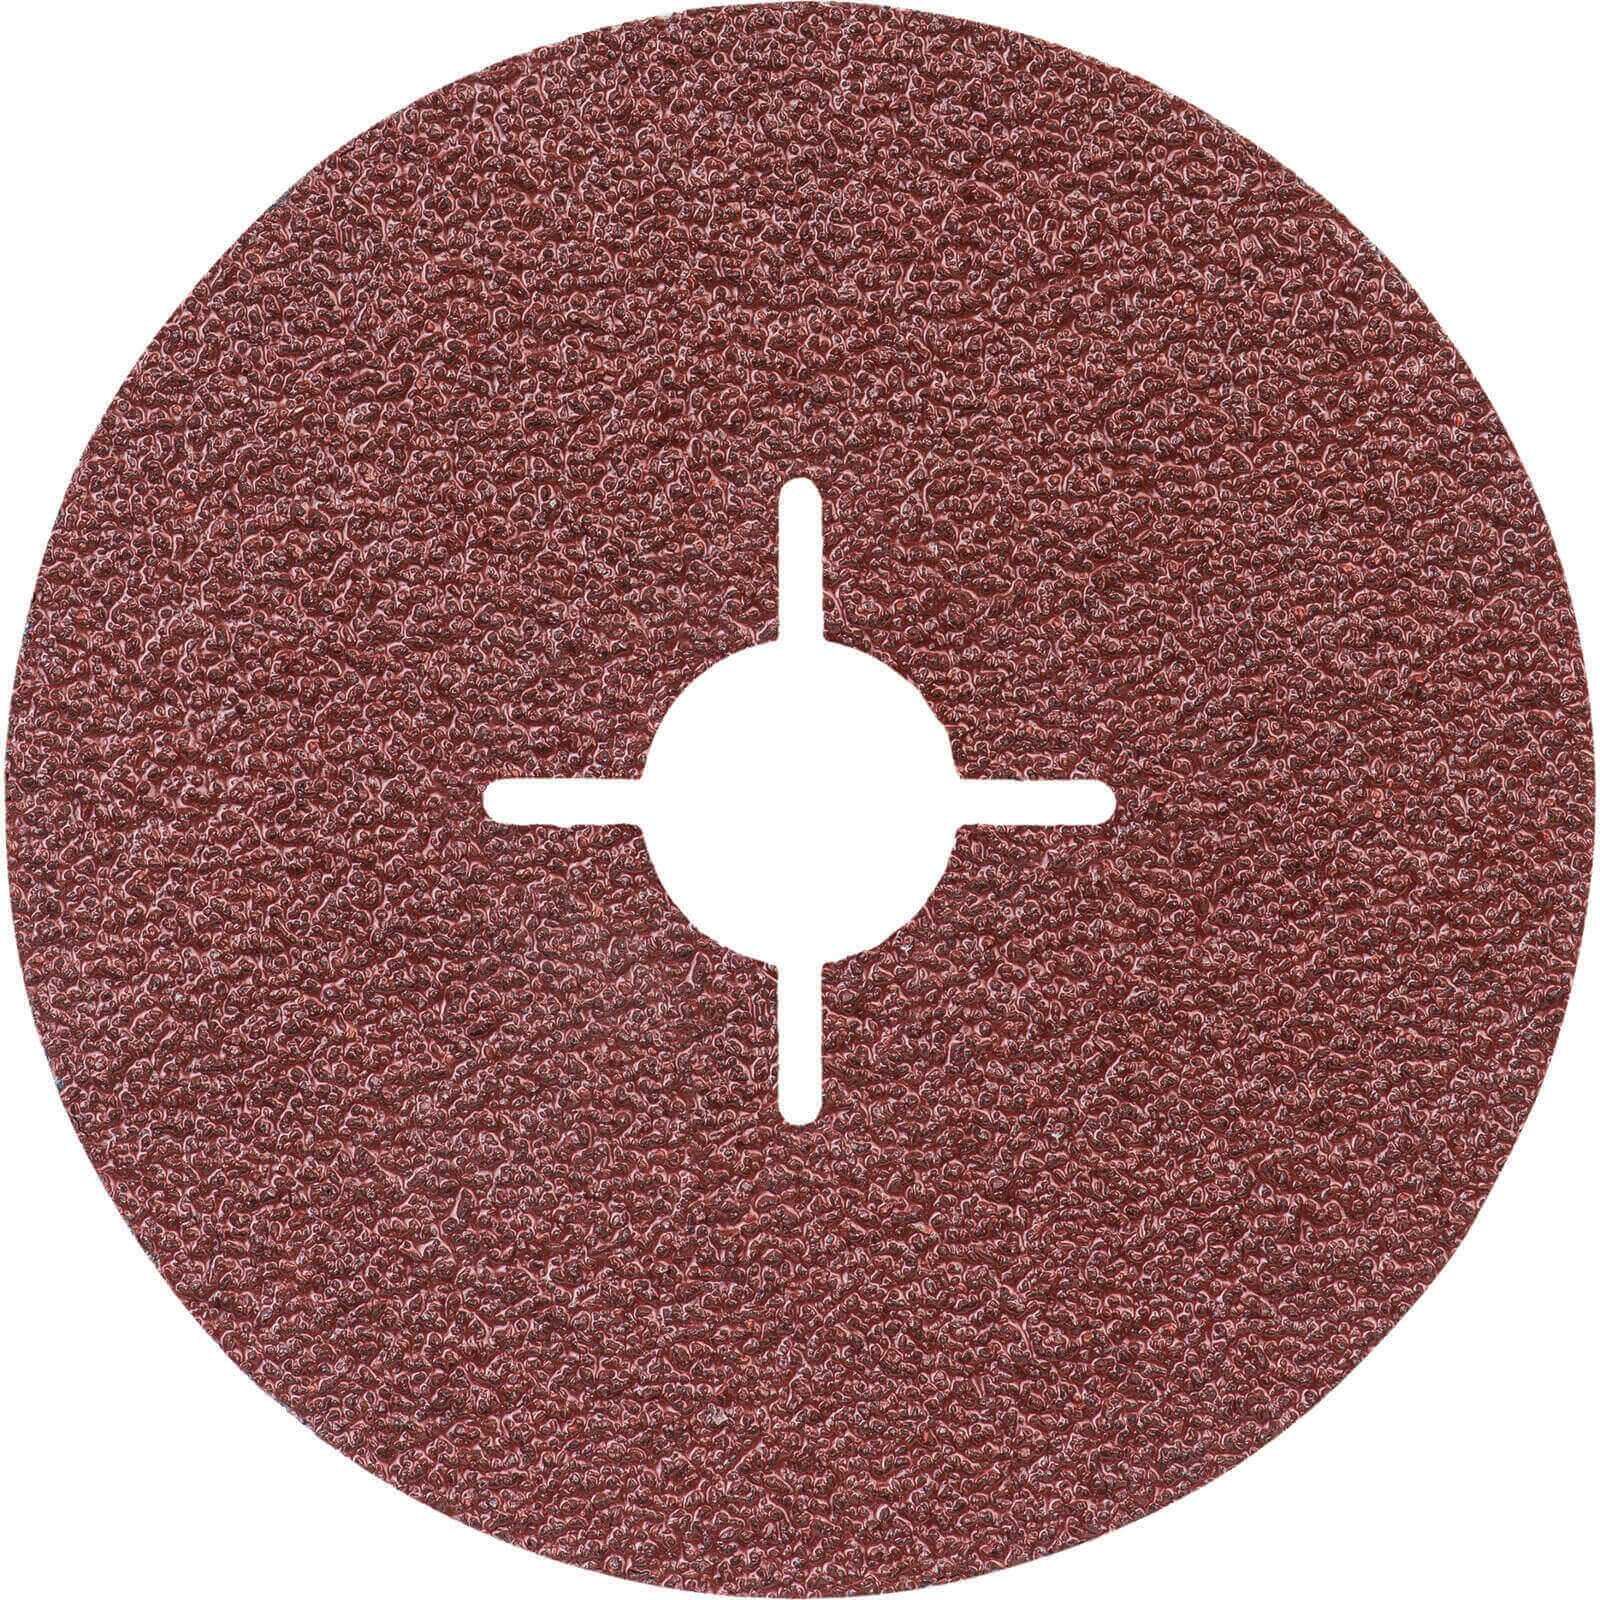 Photos - Abrasive Wheel / Belt Bosch Expert Fibre Sanding Disc for Metal 115mm 36g Pack of 1 2608607249 